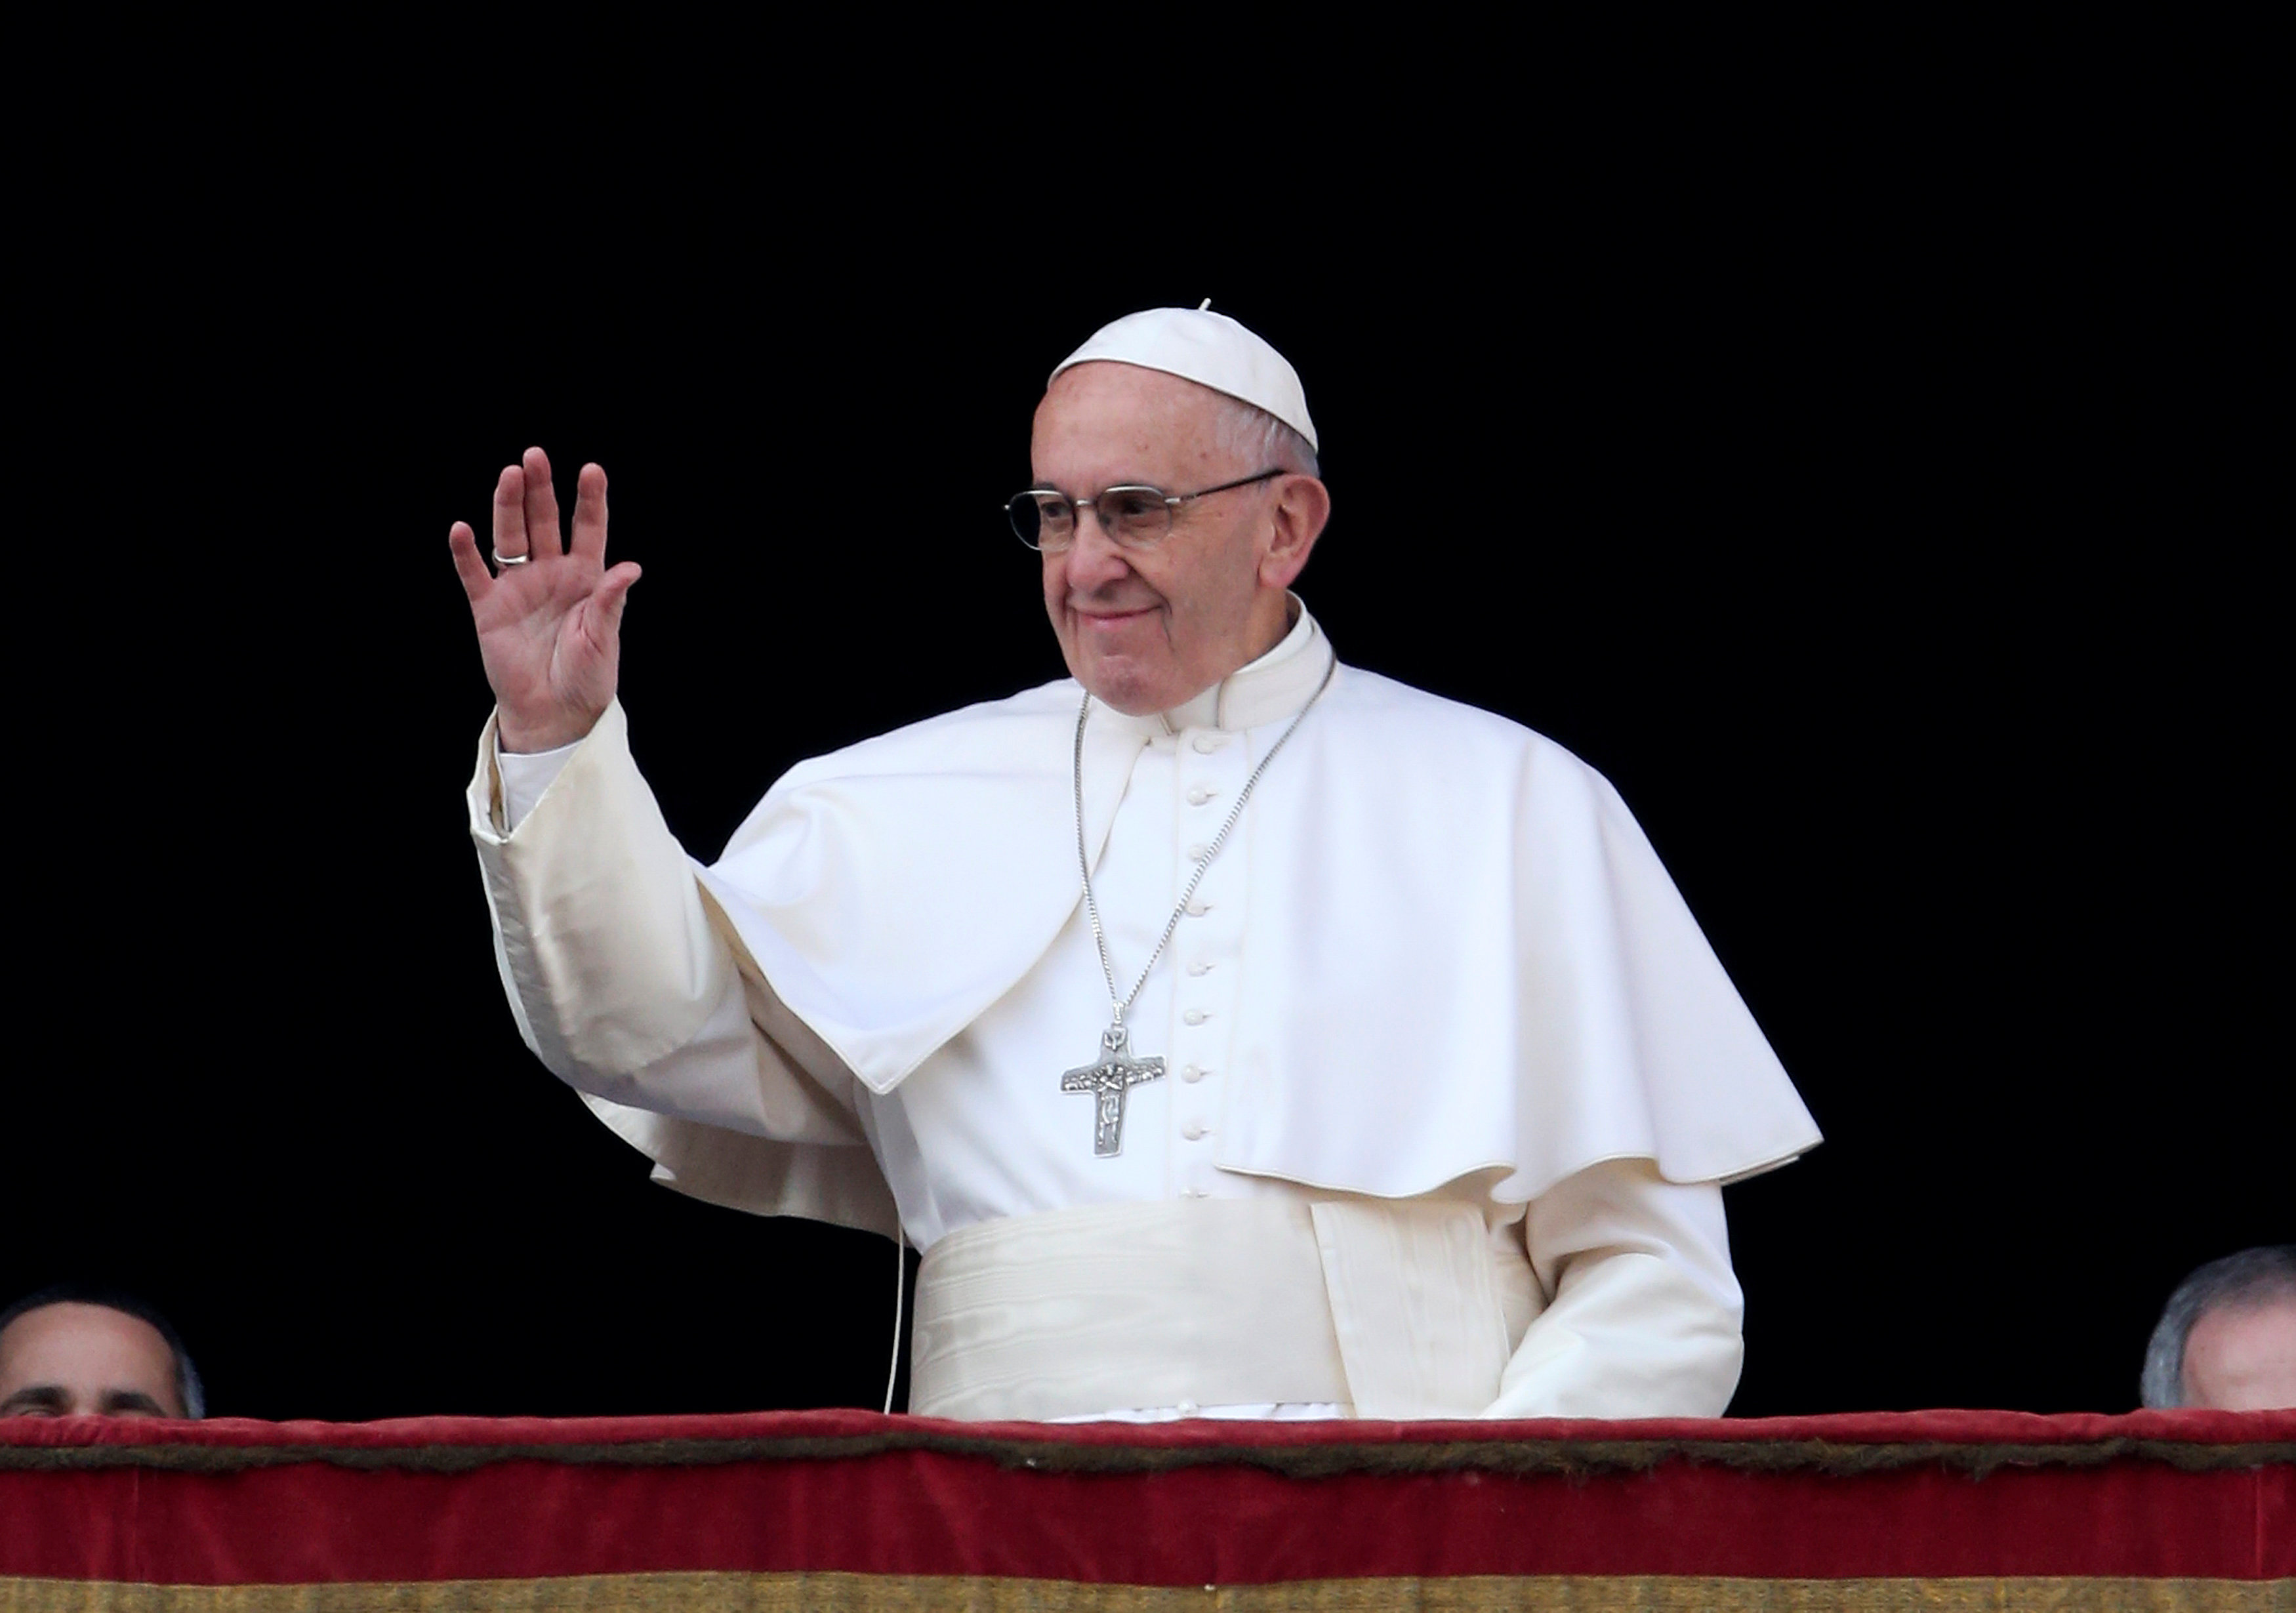 Vaticano: El Papa está dispuesto a reunirse con gobierno y oposición